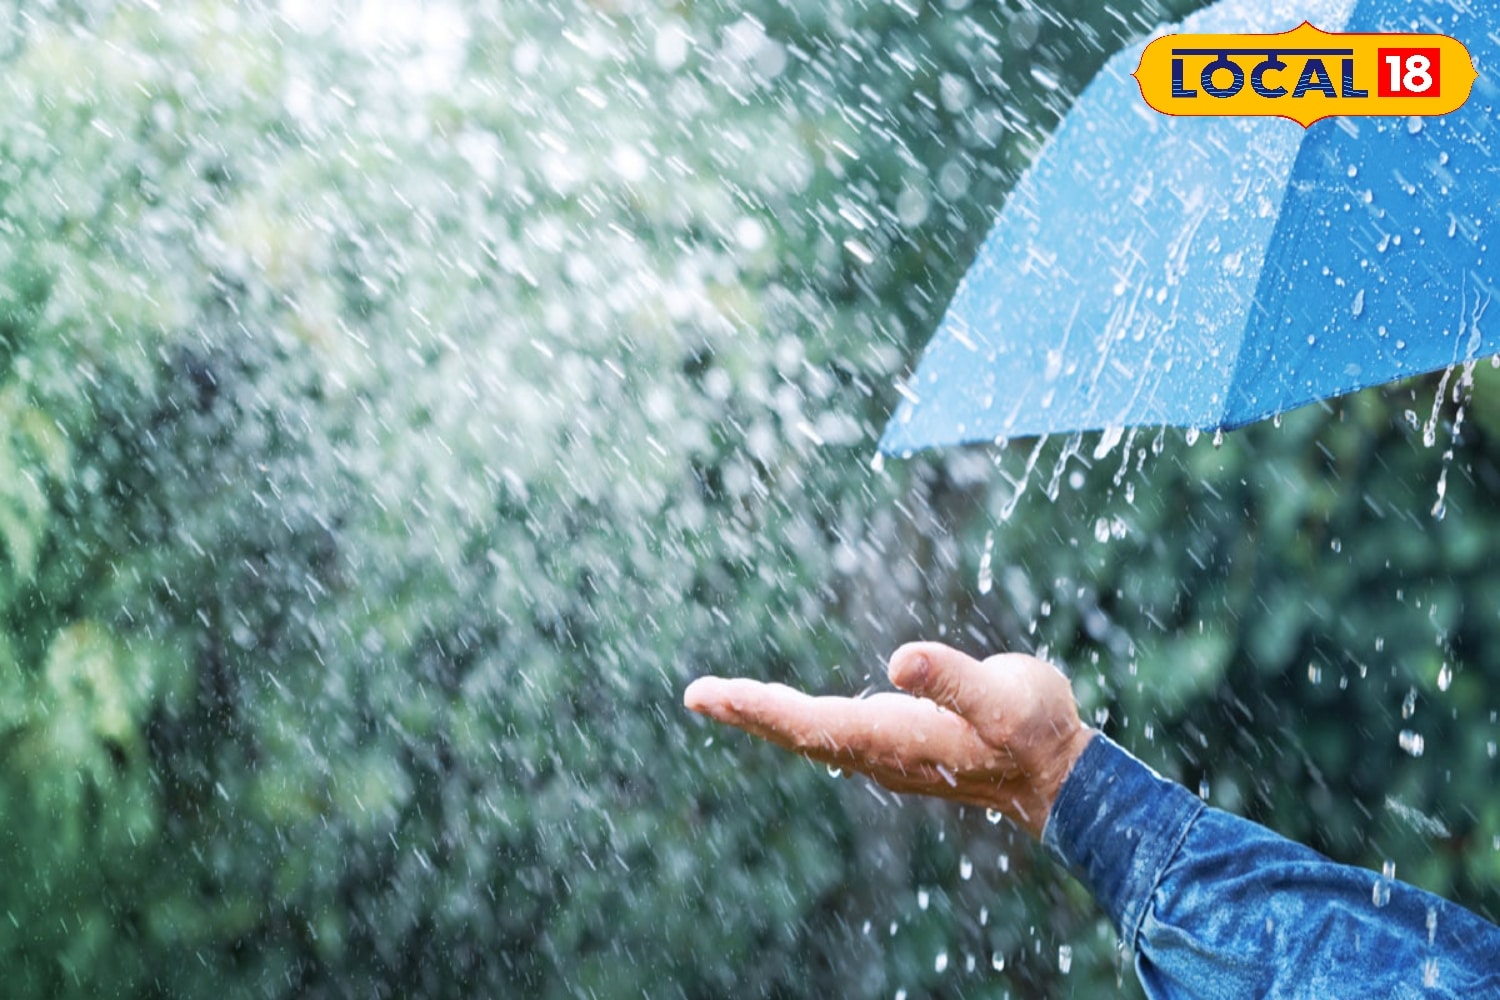 Bengal Rain Forecast: আগামী দুই থেকে তিন দিনে সর্বোচ্চ তাপমাত্রা ২ থেকে ৩ ডিগ্রি সেলসিয়াস বাড়তে পারে। বজ্রগর্ভ মেঘ থেকে বিক্ষিপ্তভাবে স্বল্প সময়ের বৃষ্টির অল্প সম্ভাবনা।